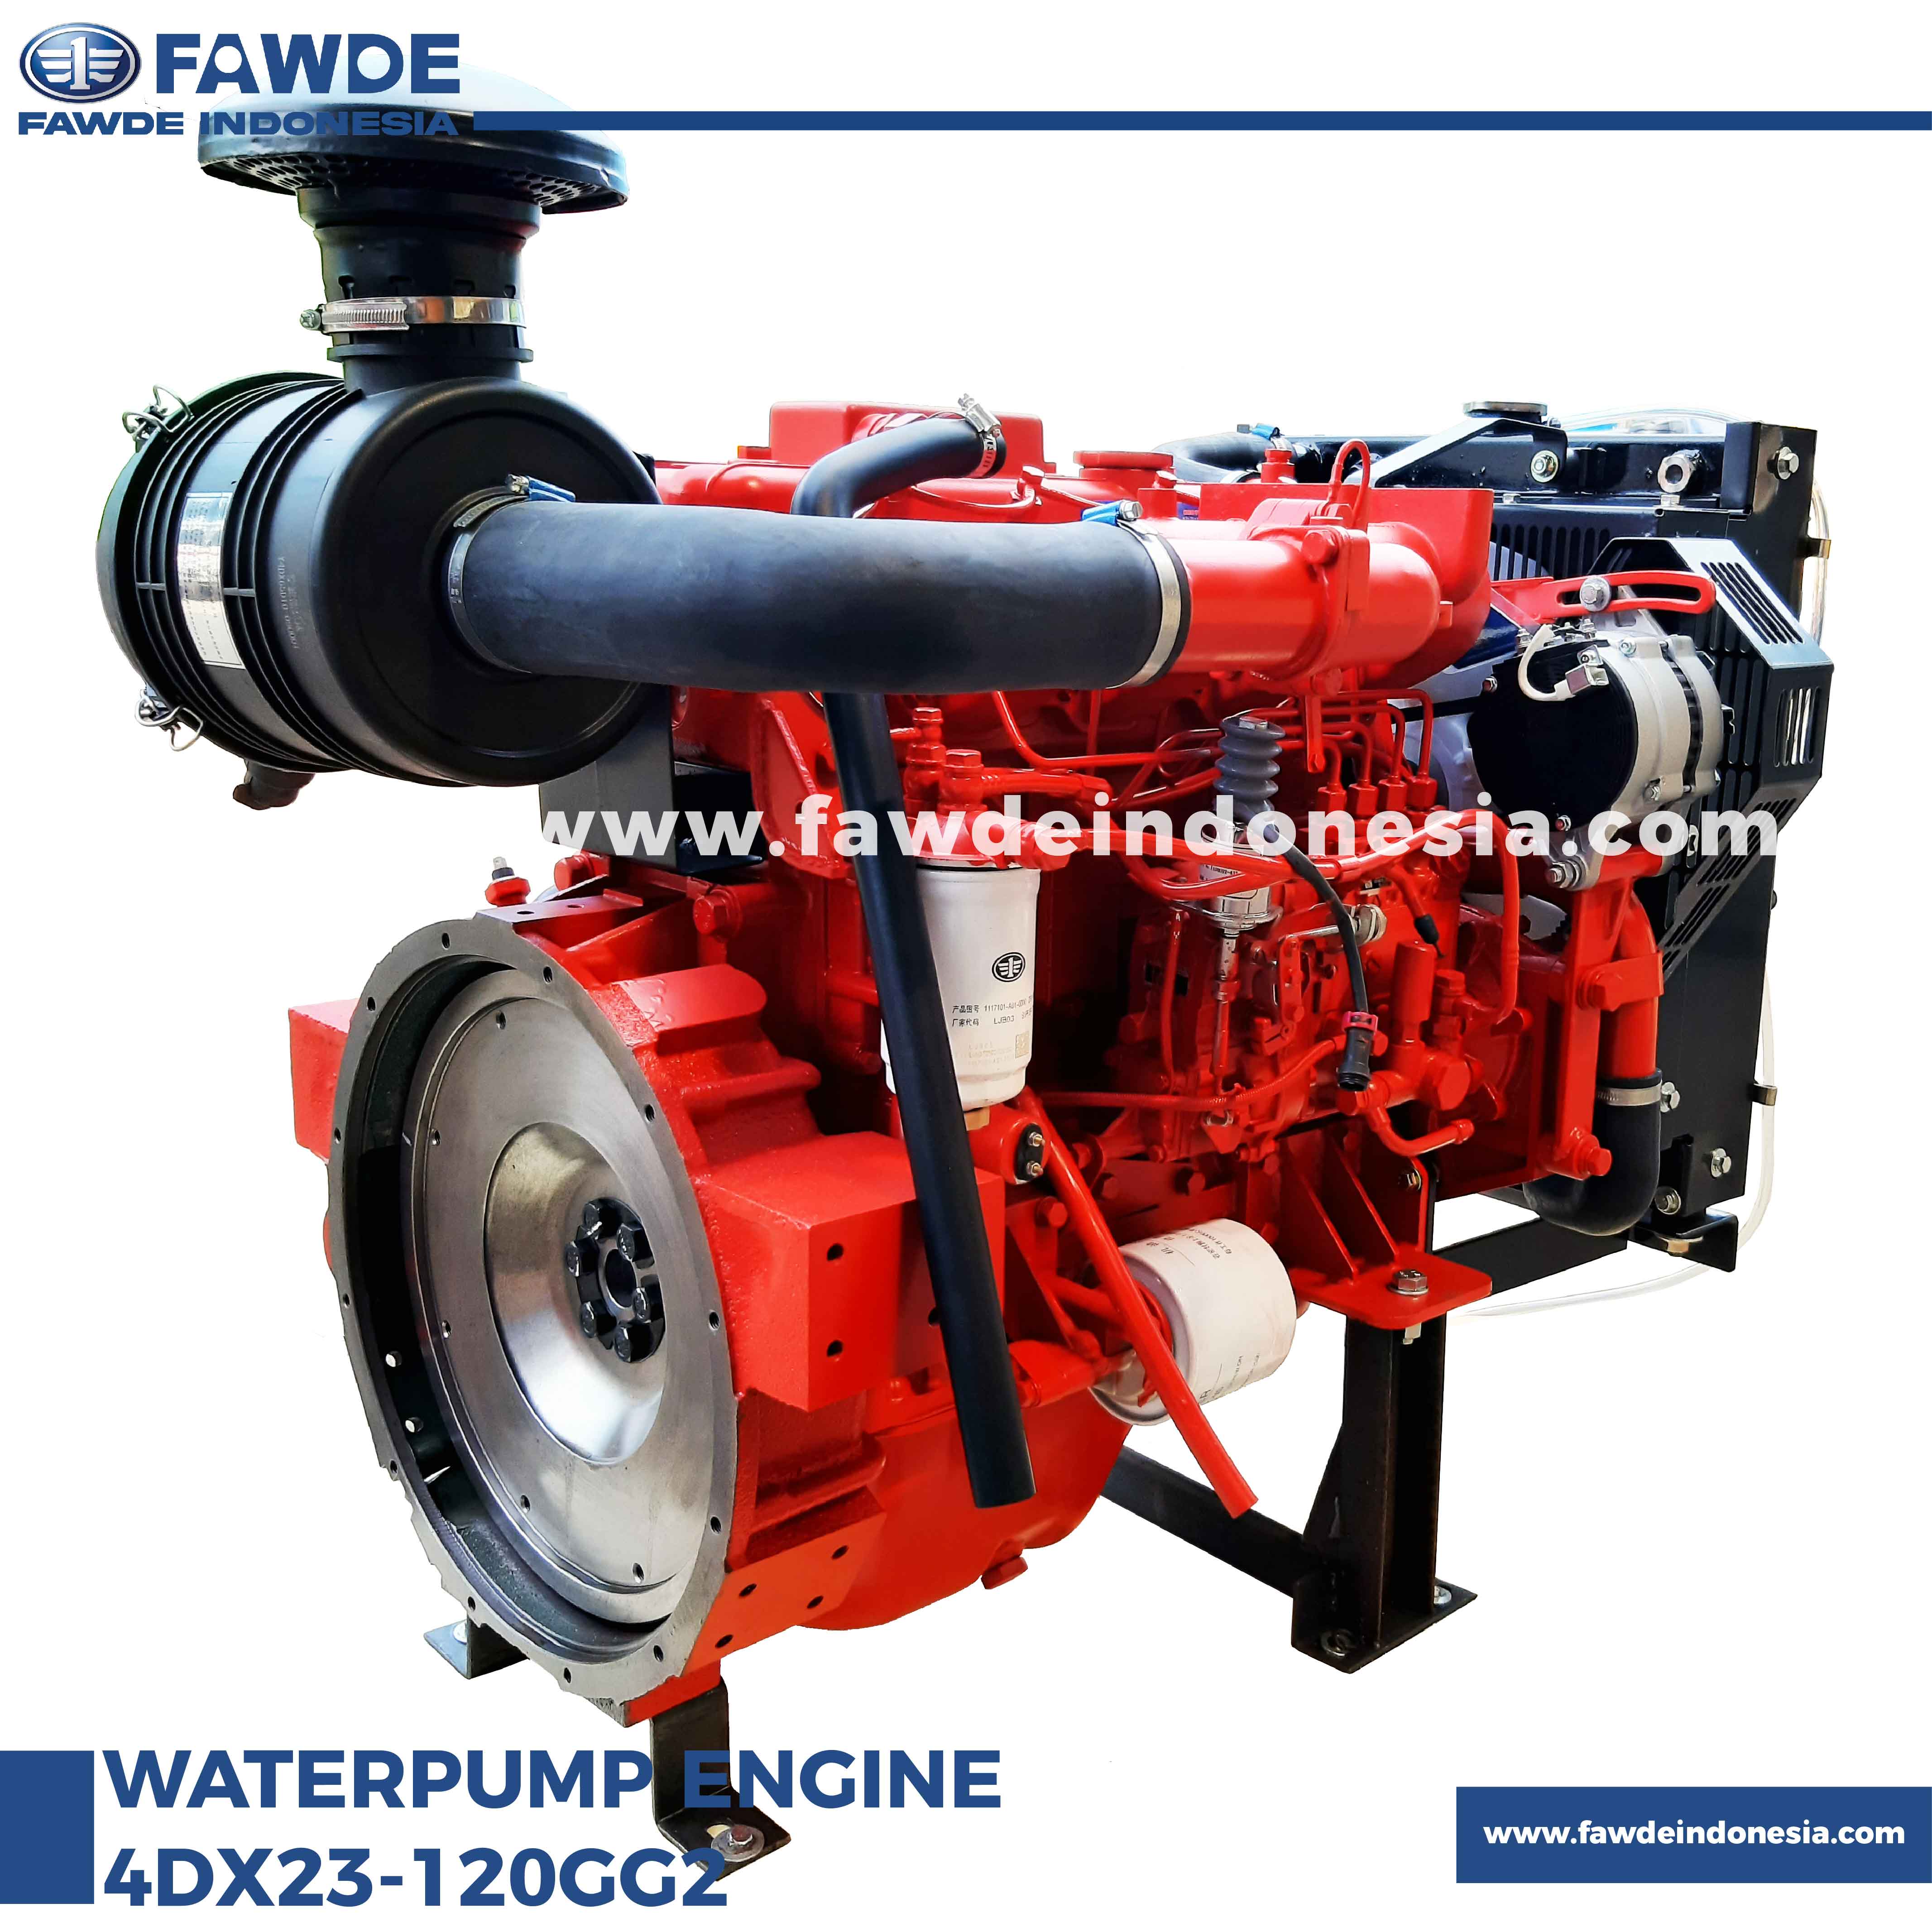 waterpump engine 4DX23-120GG2_2